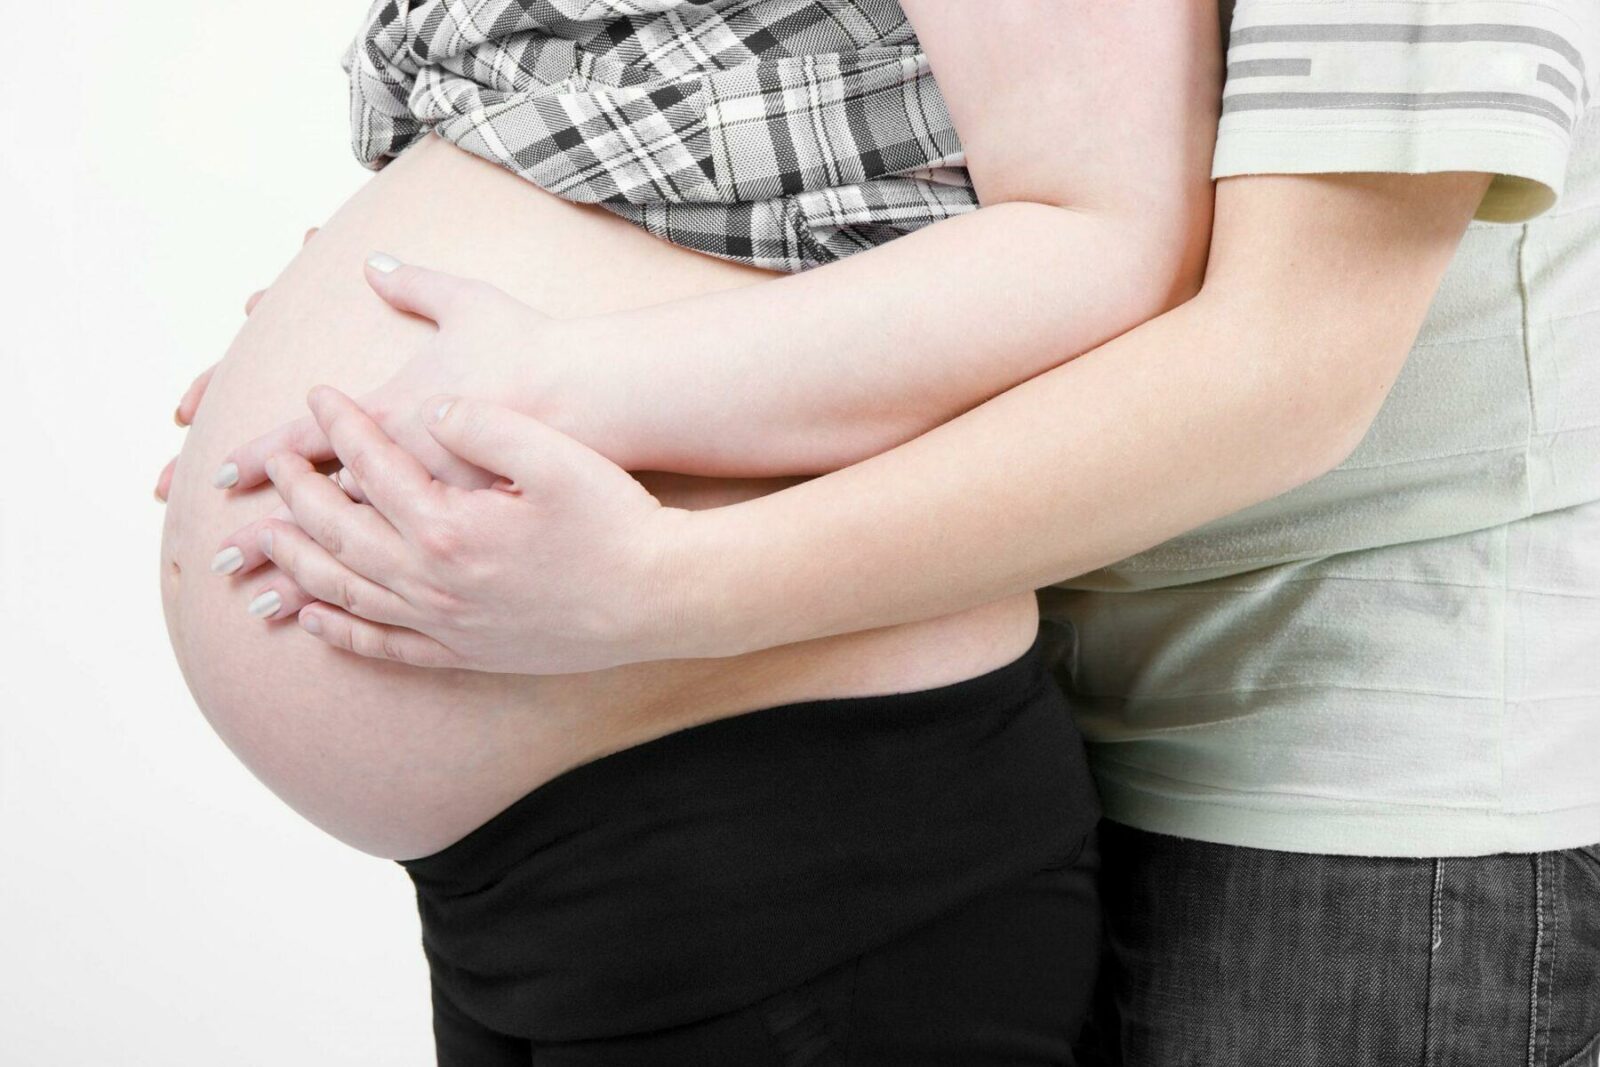 Fakta om graviditet og nyresygdom